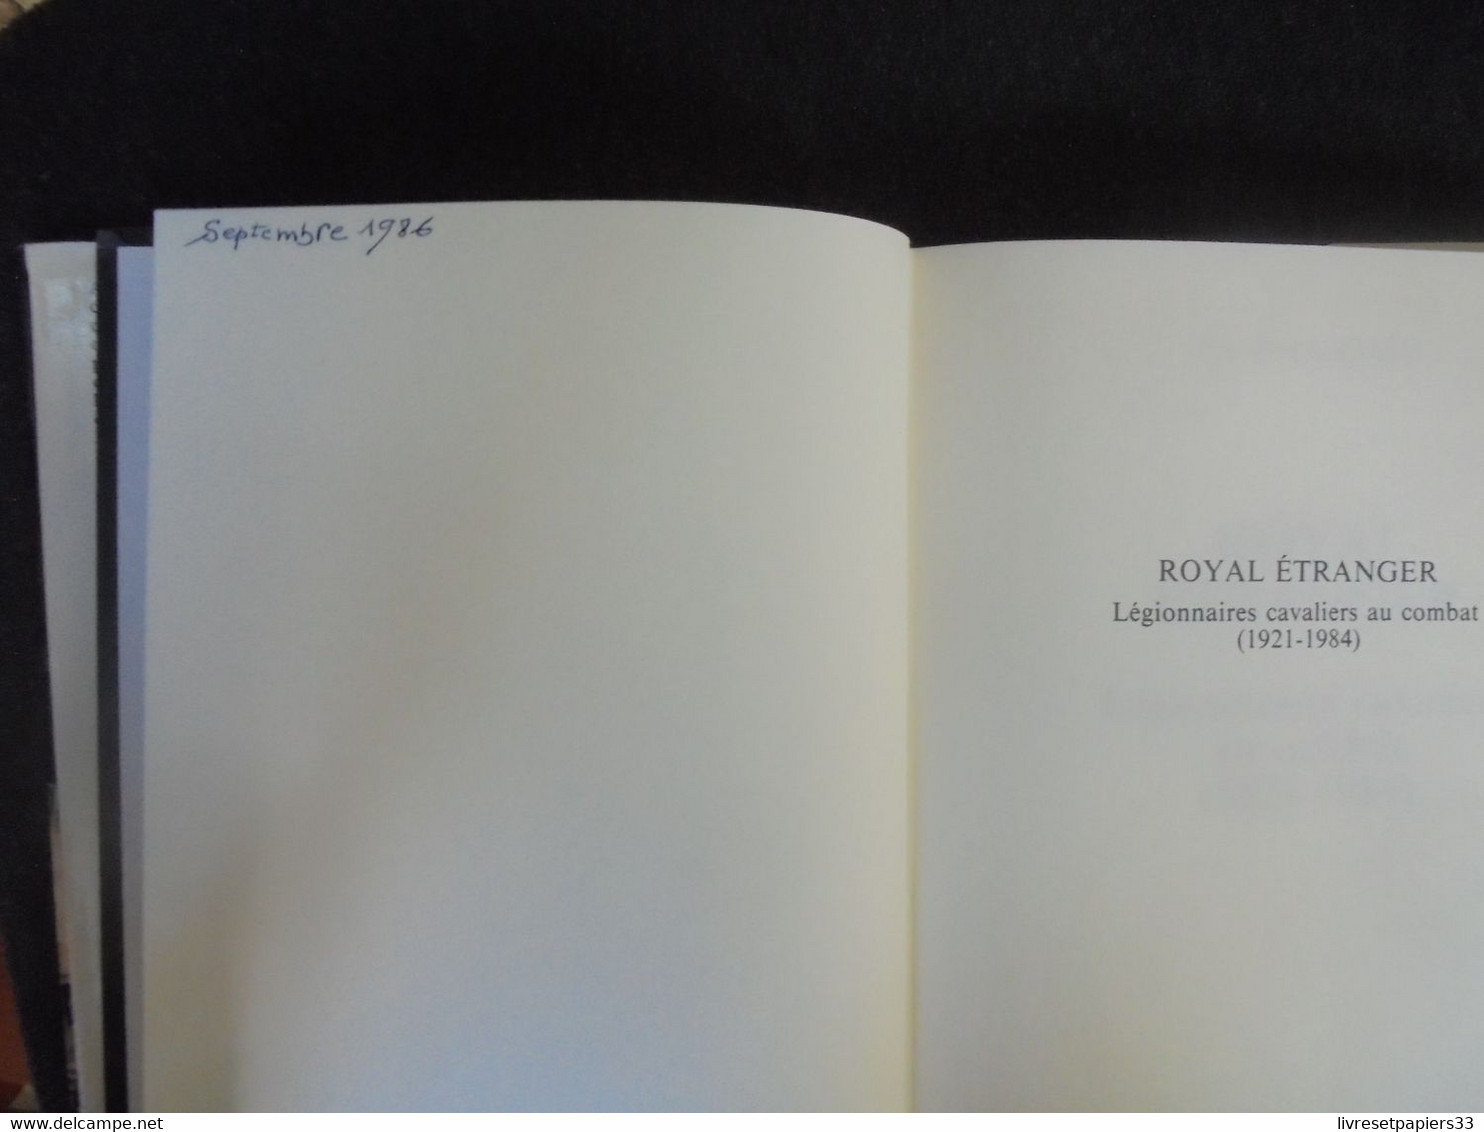 Royal Etranger Légionnaires Cavaliers Au Combat 1921-1984 - Alain Gandy - Presse De La Cité 1985 - Français